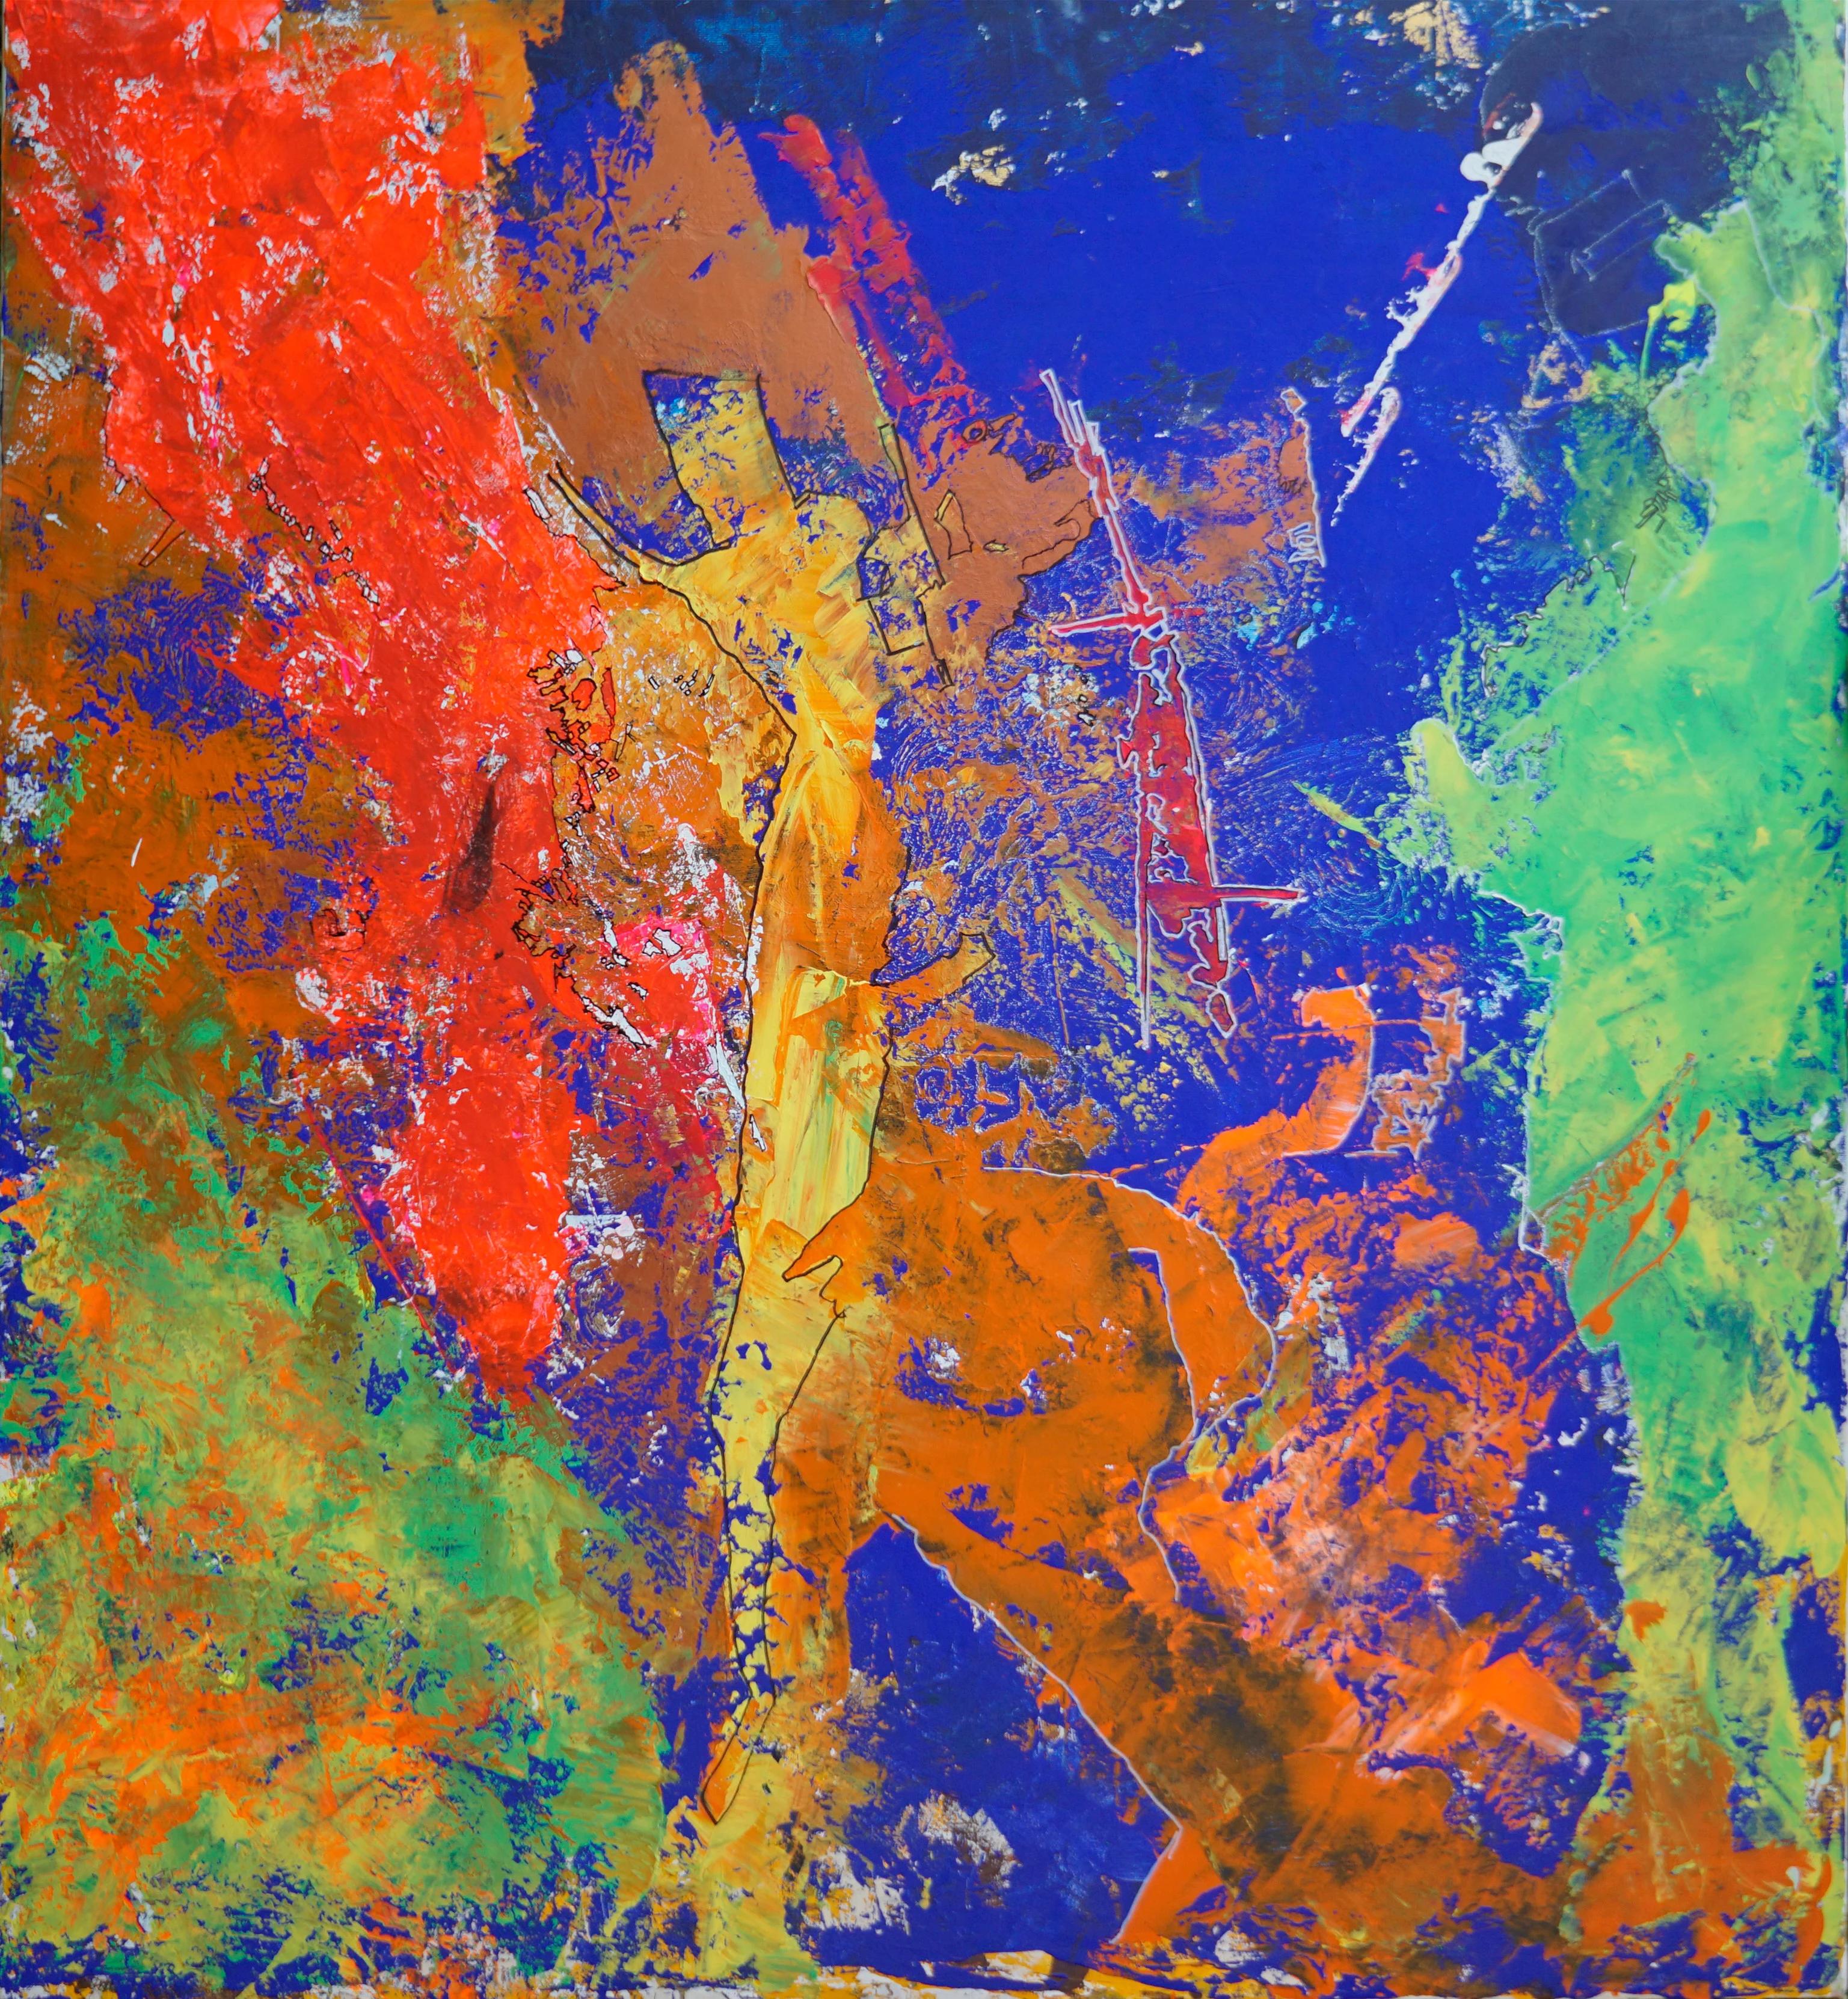 "Tectonique" Peinture abstraite en techniques mixtes 79" x 71" pouces par Ahmed Farid

techniques mixtes sur toile

Né en 1950 au Caire, en Égypte, où il vit et travaille actuellement, Farid est un peintre égyptien autodidacte qui a suivi une